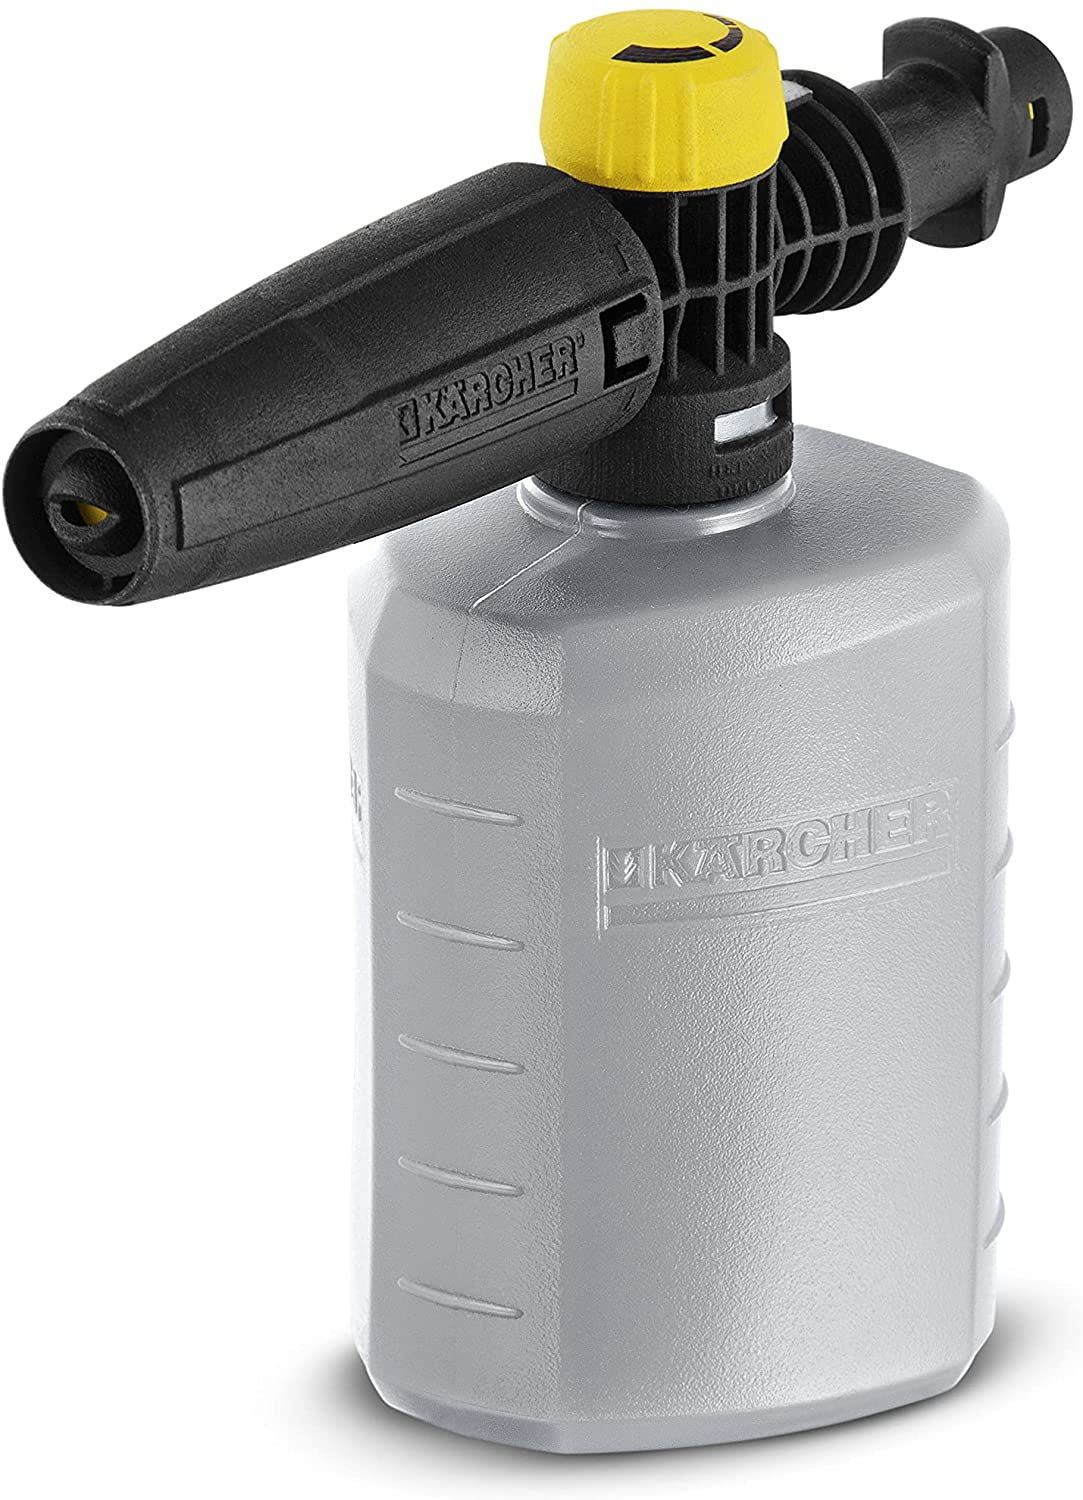 Pressure Washer 3/8"M Wash Gun & Snow Foam Lance Karcher K-Series Compatible 